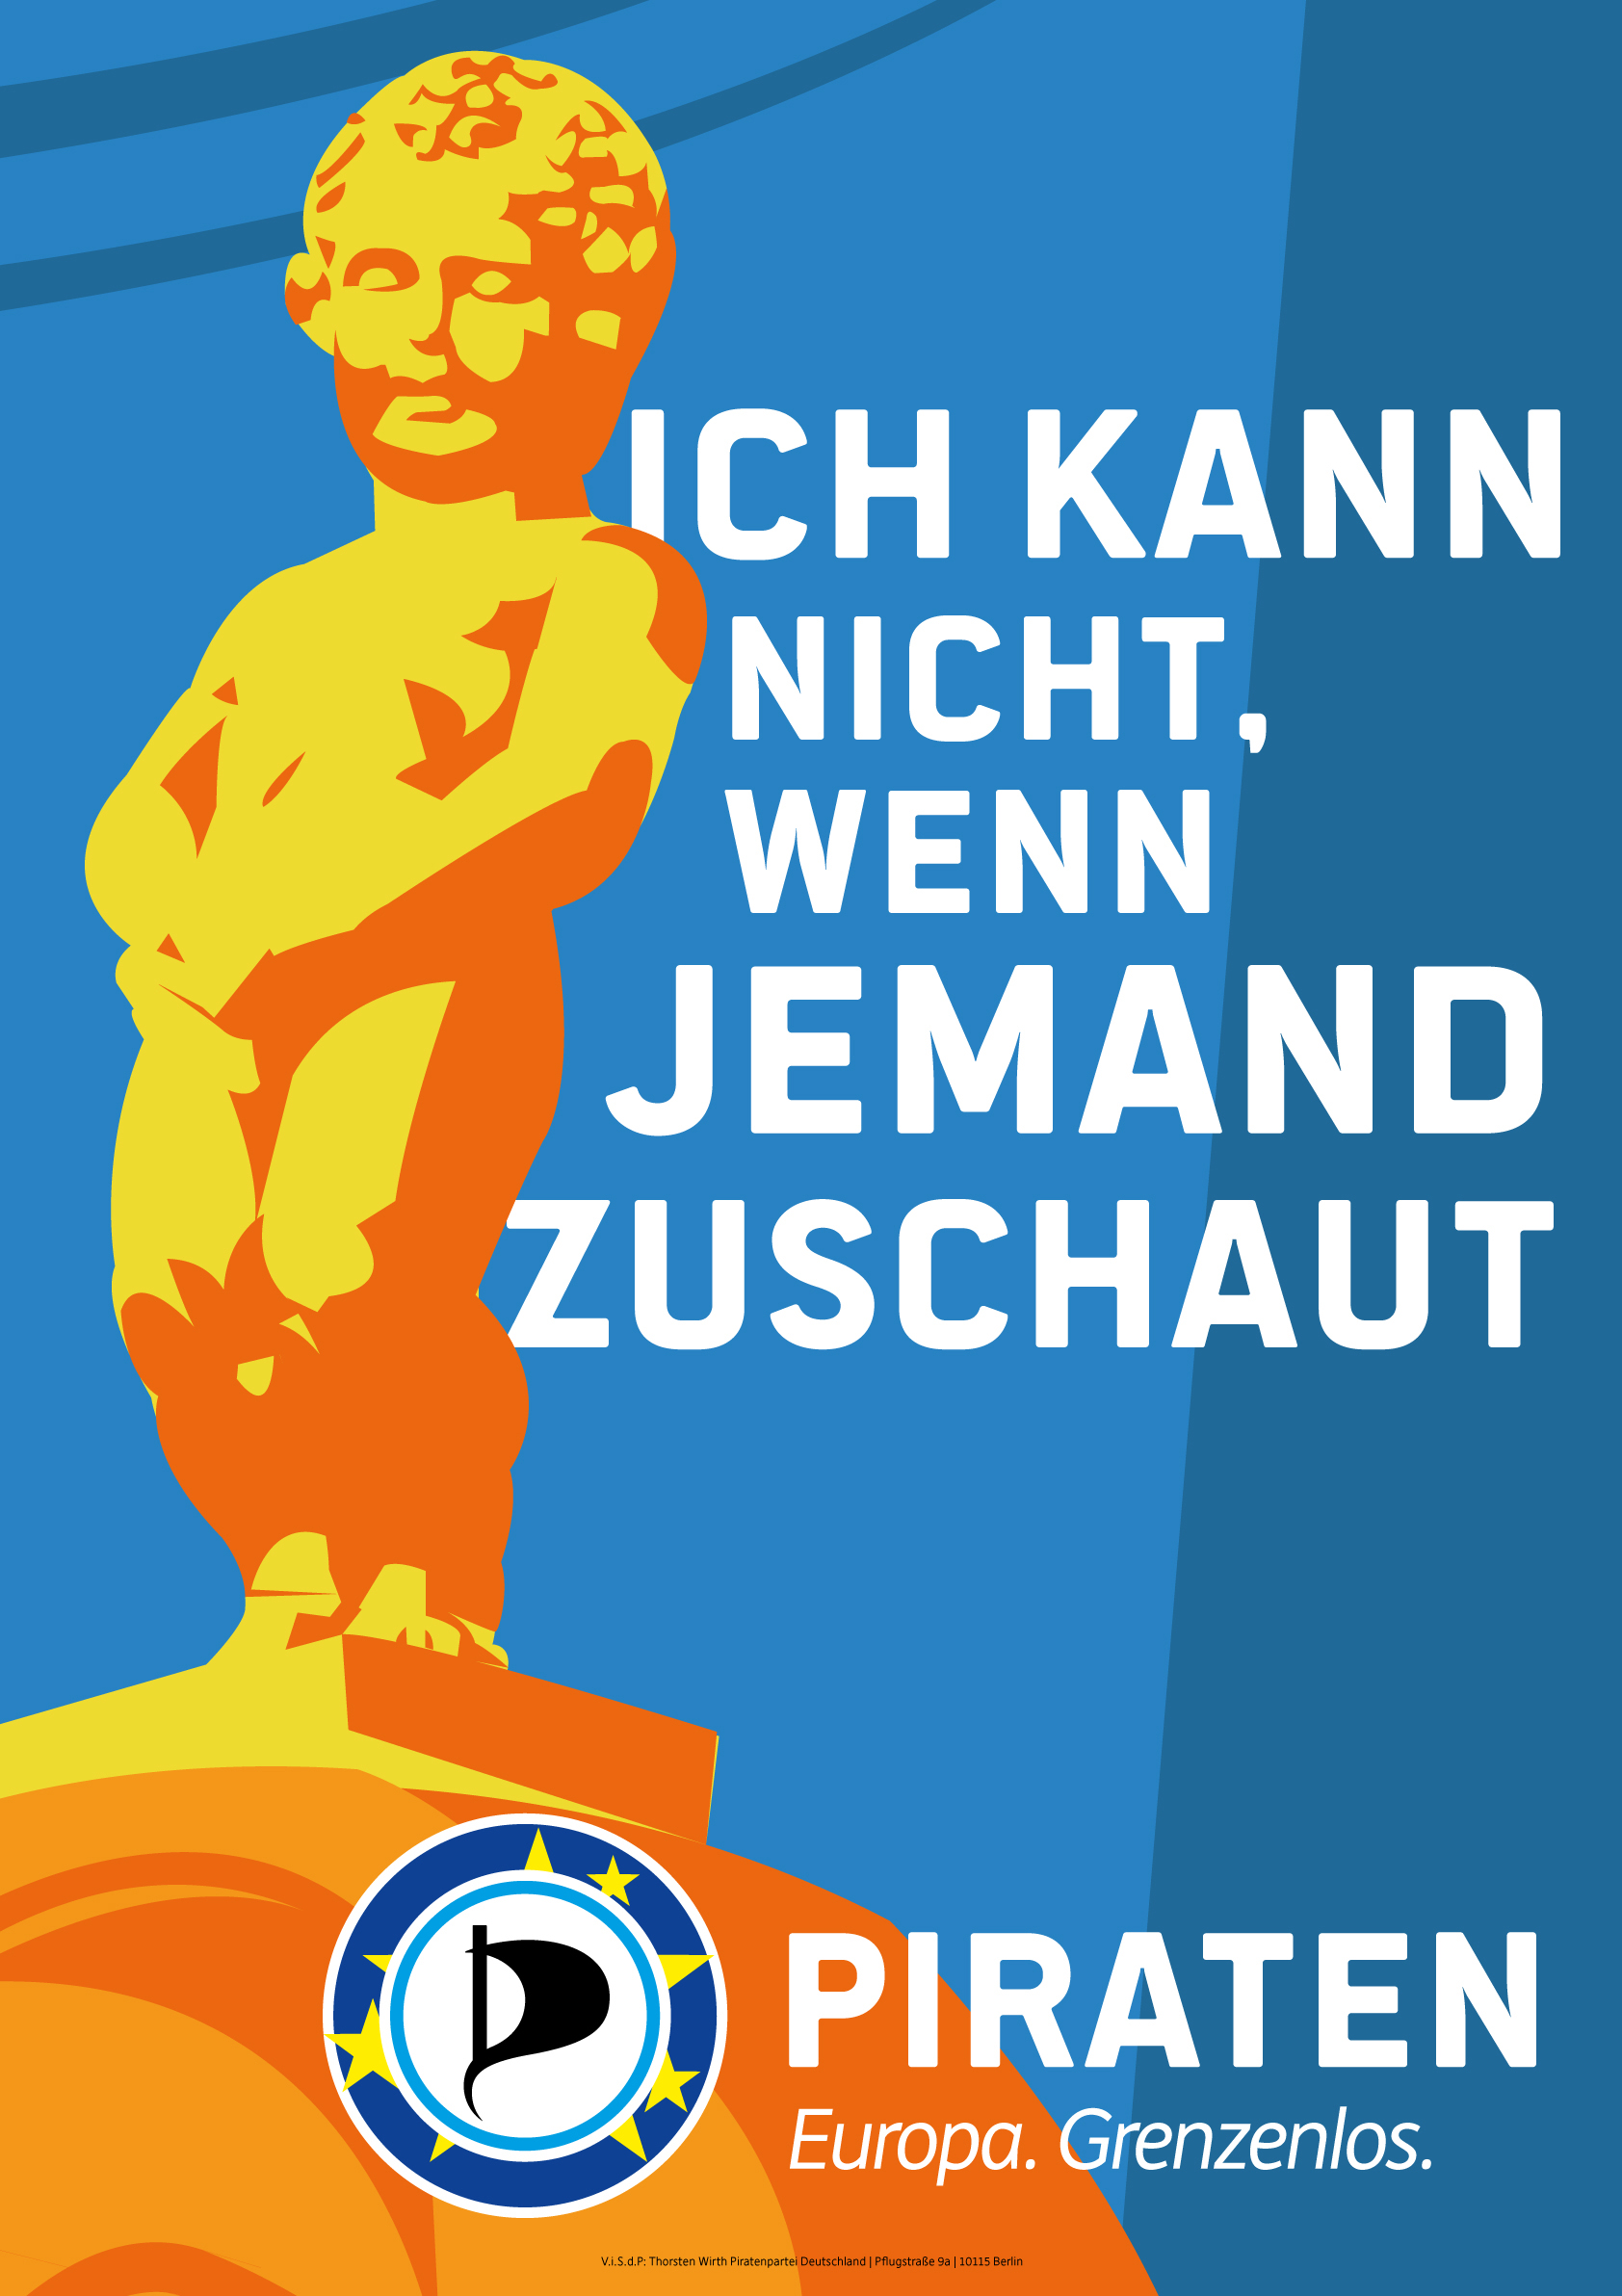 Ich_kann_nicht_wenn_JEMAND_zuschaut_PPEU_Poster_03_by_Piratenpartei_Deutschland_CC-BY